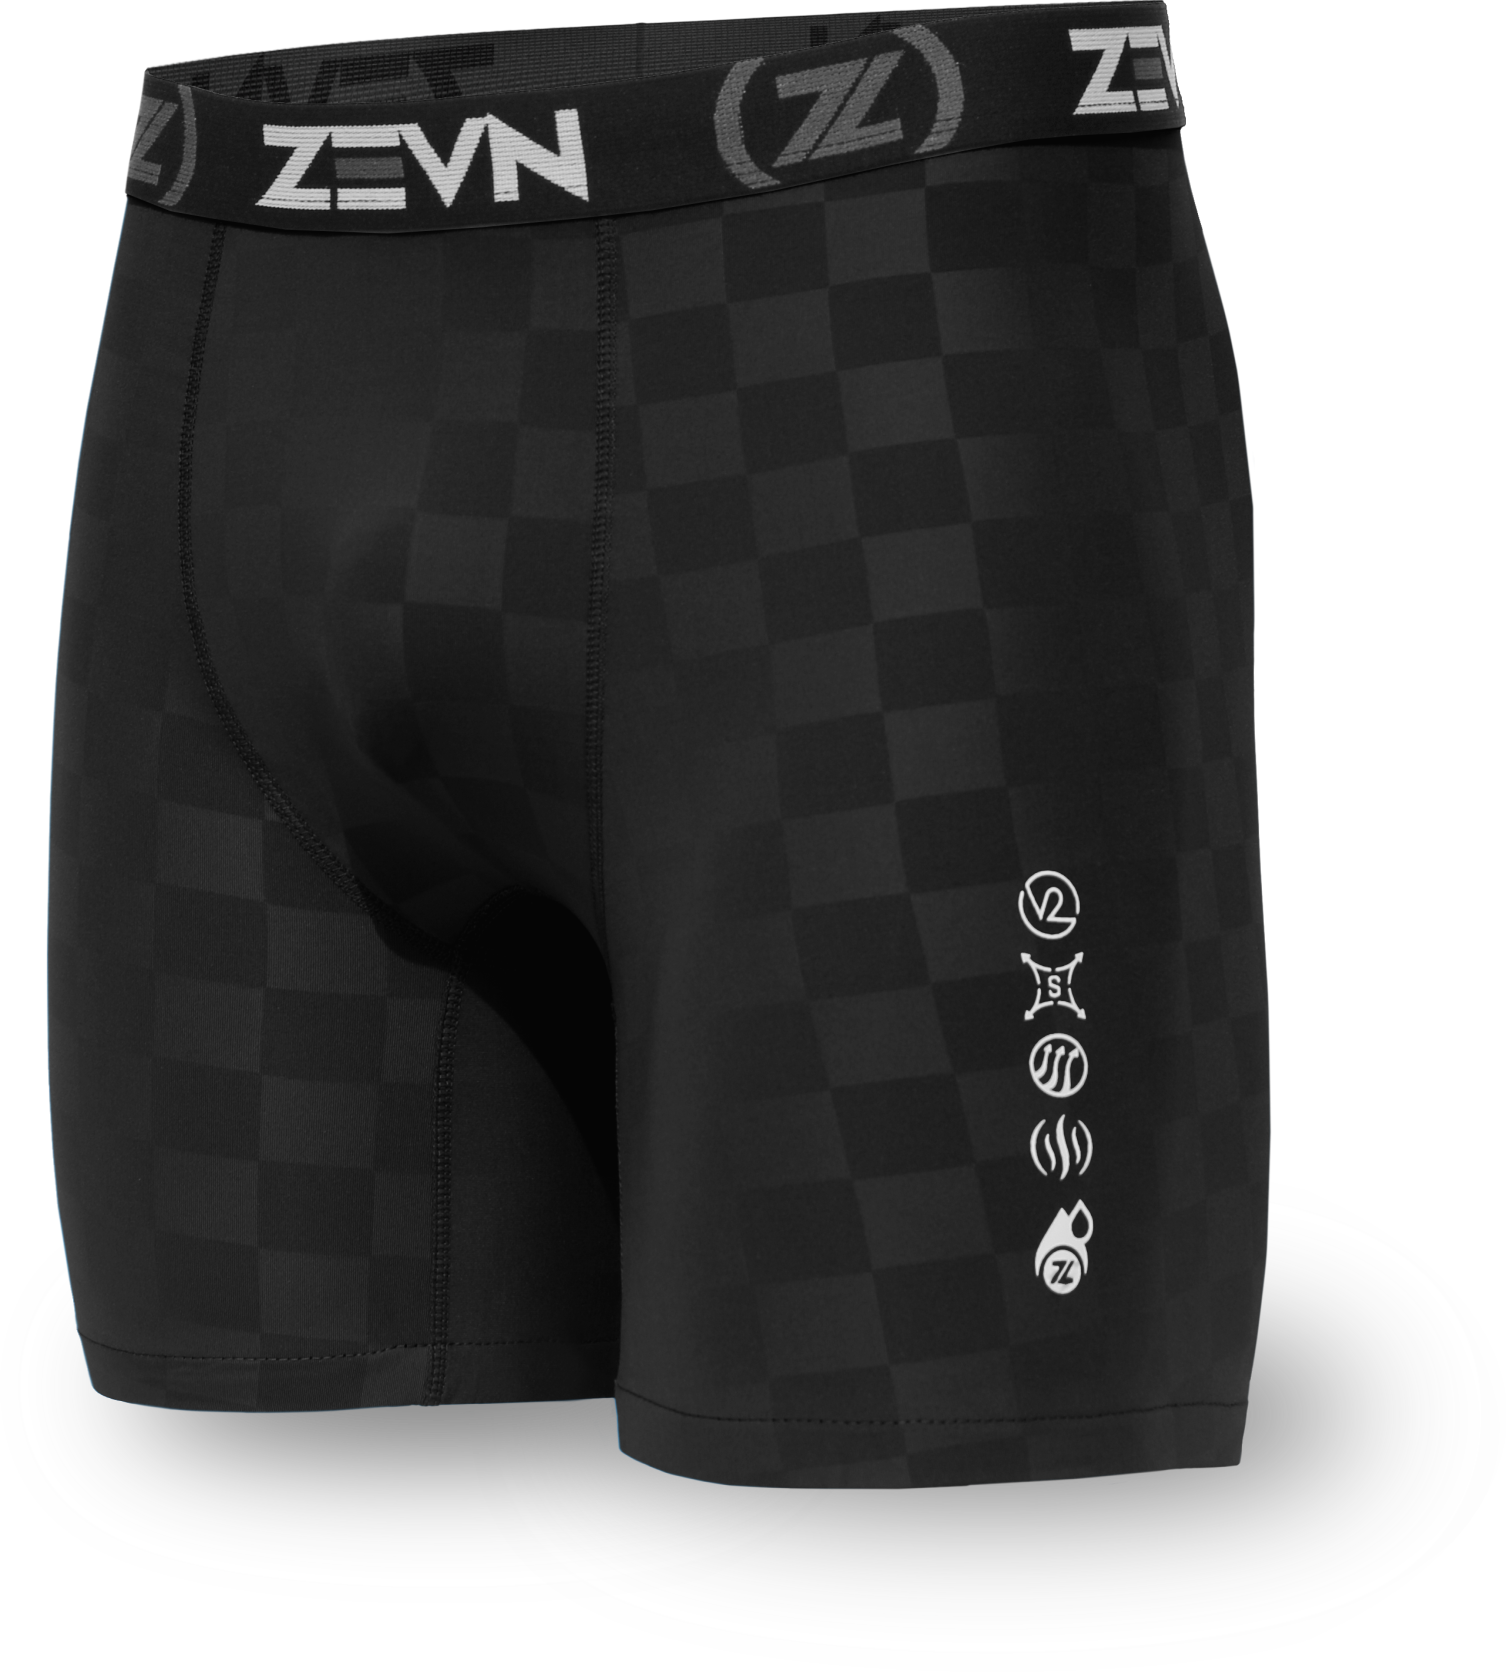 Daily Underwear For Women: ZVW women's everyday underwear by ZEVN – ZEVN  USA Sports Underwear